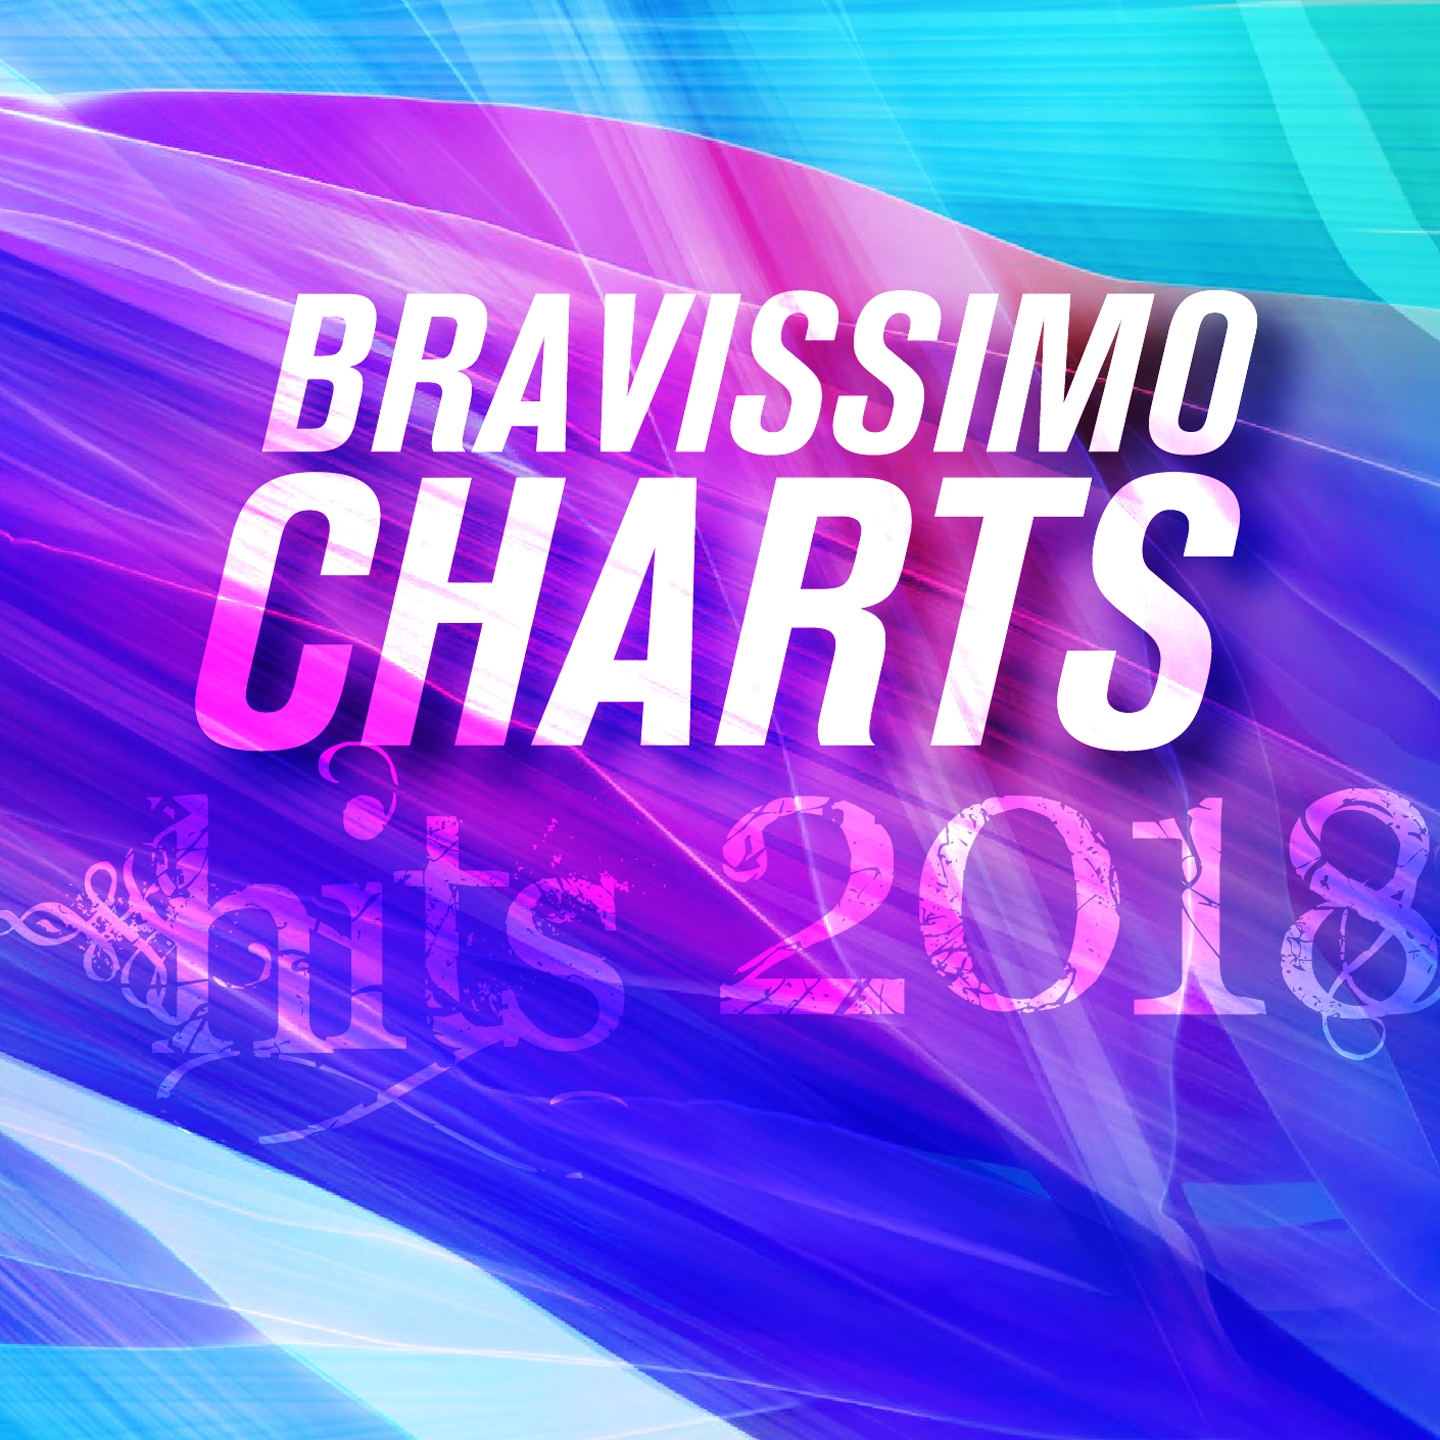 Bravissimo Charts Hits 2018